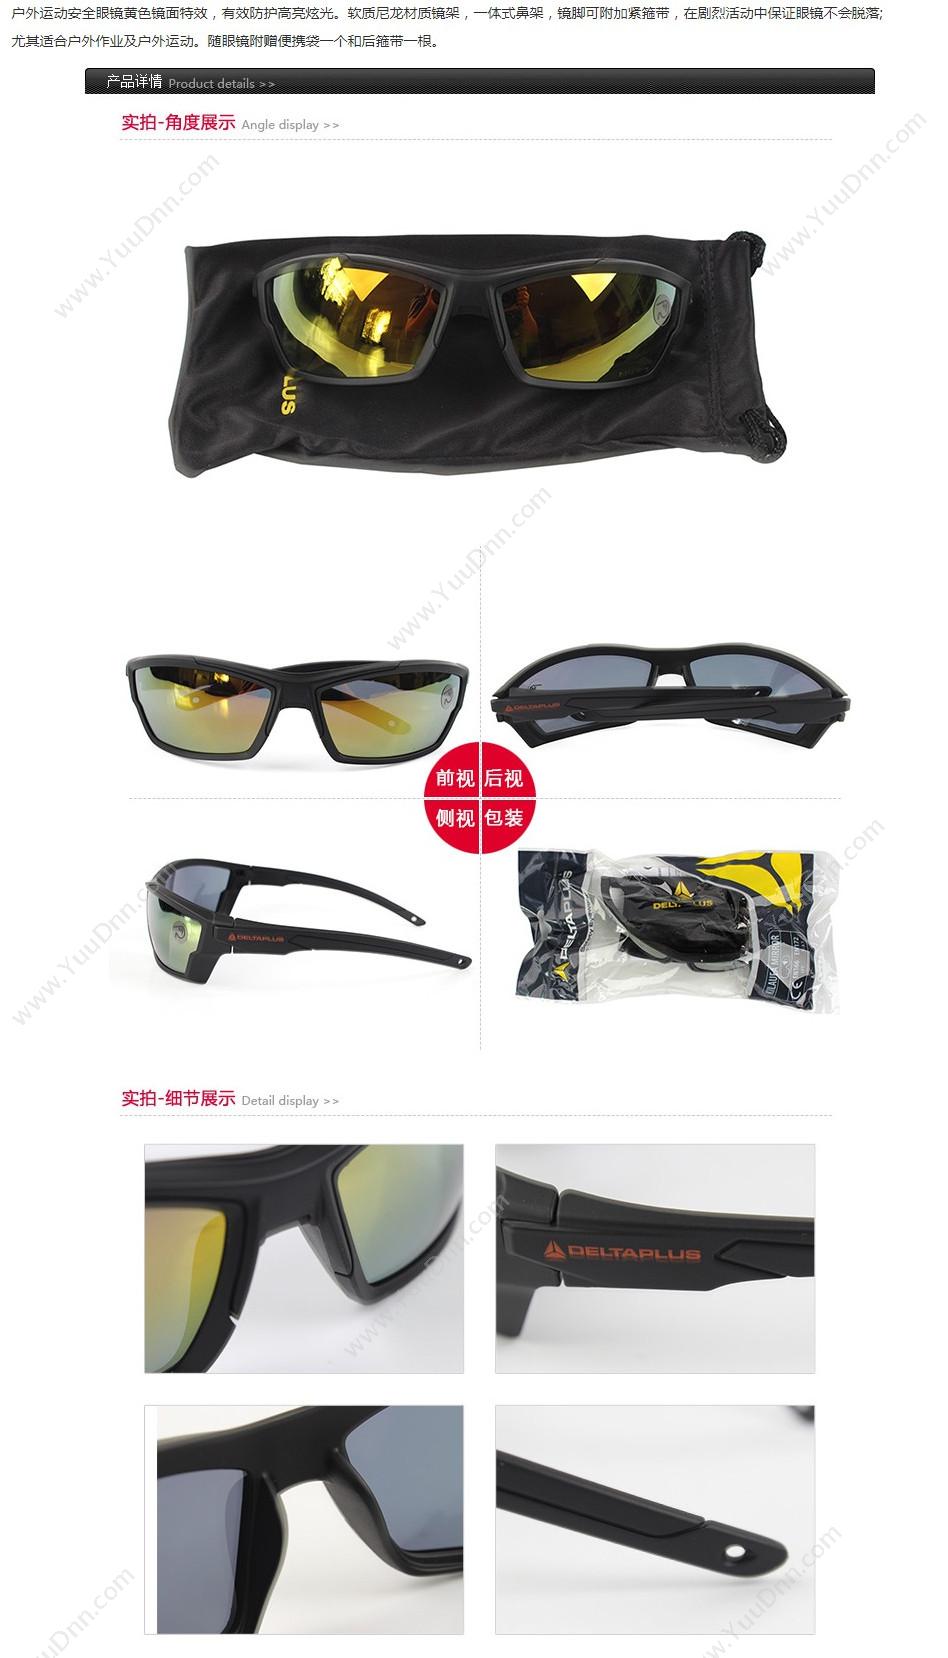 代尔塔 Delta 101153 防眩光运动眼镜镜面 KILAUEA MIRROR（黄） 10个/盒 防雾、防刮擦、防静电、防炫光 防护眼镜